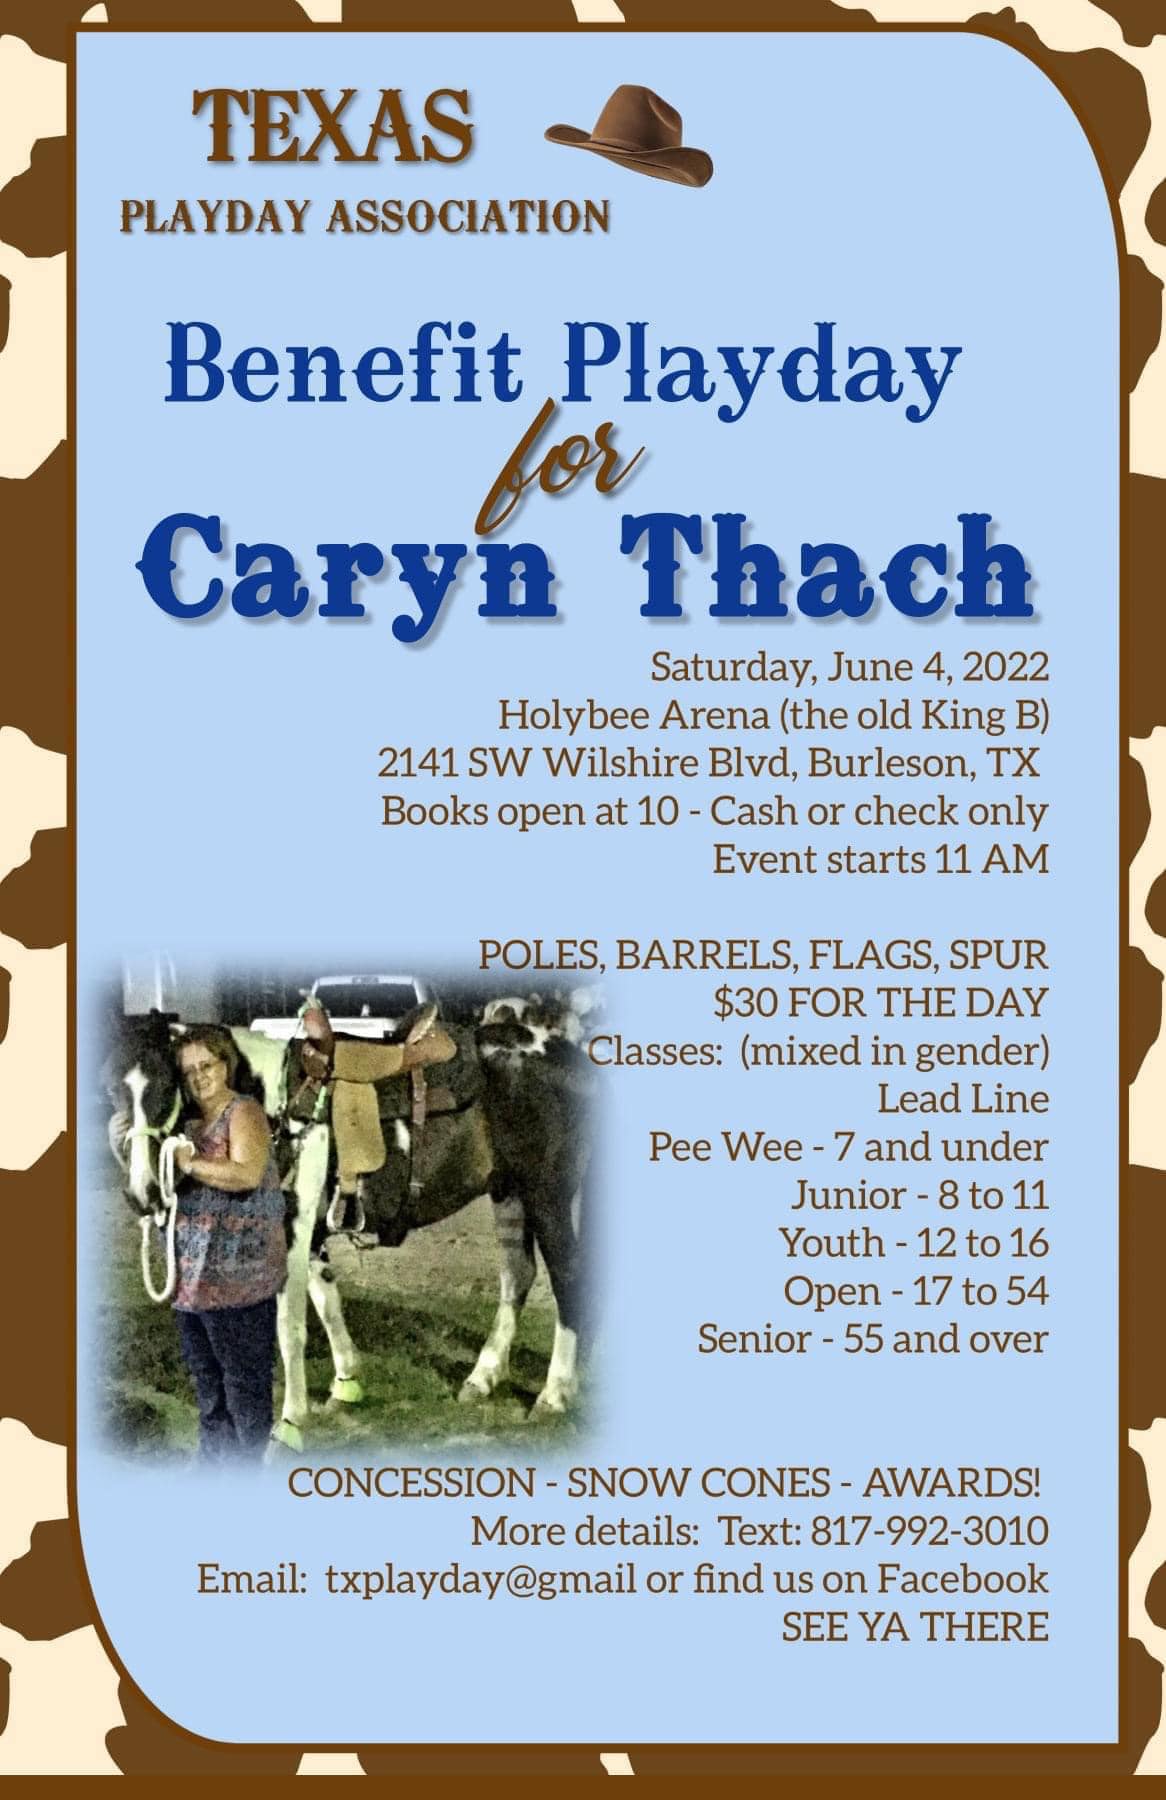 Caryn Thach Benefit Playday